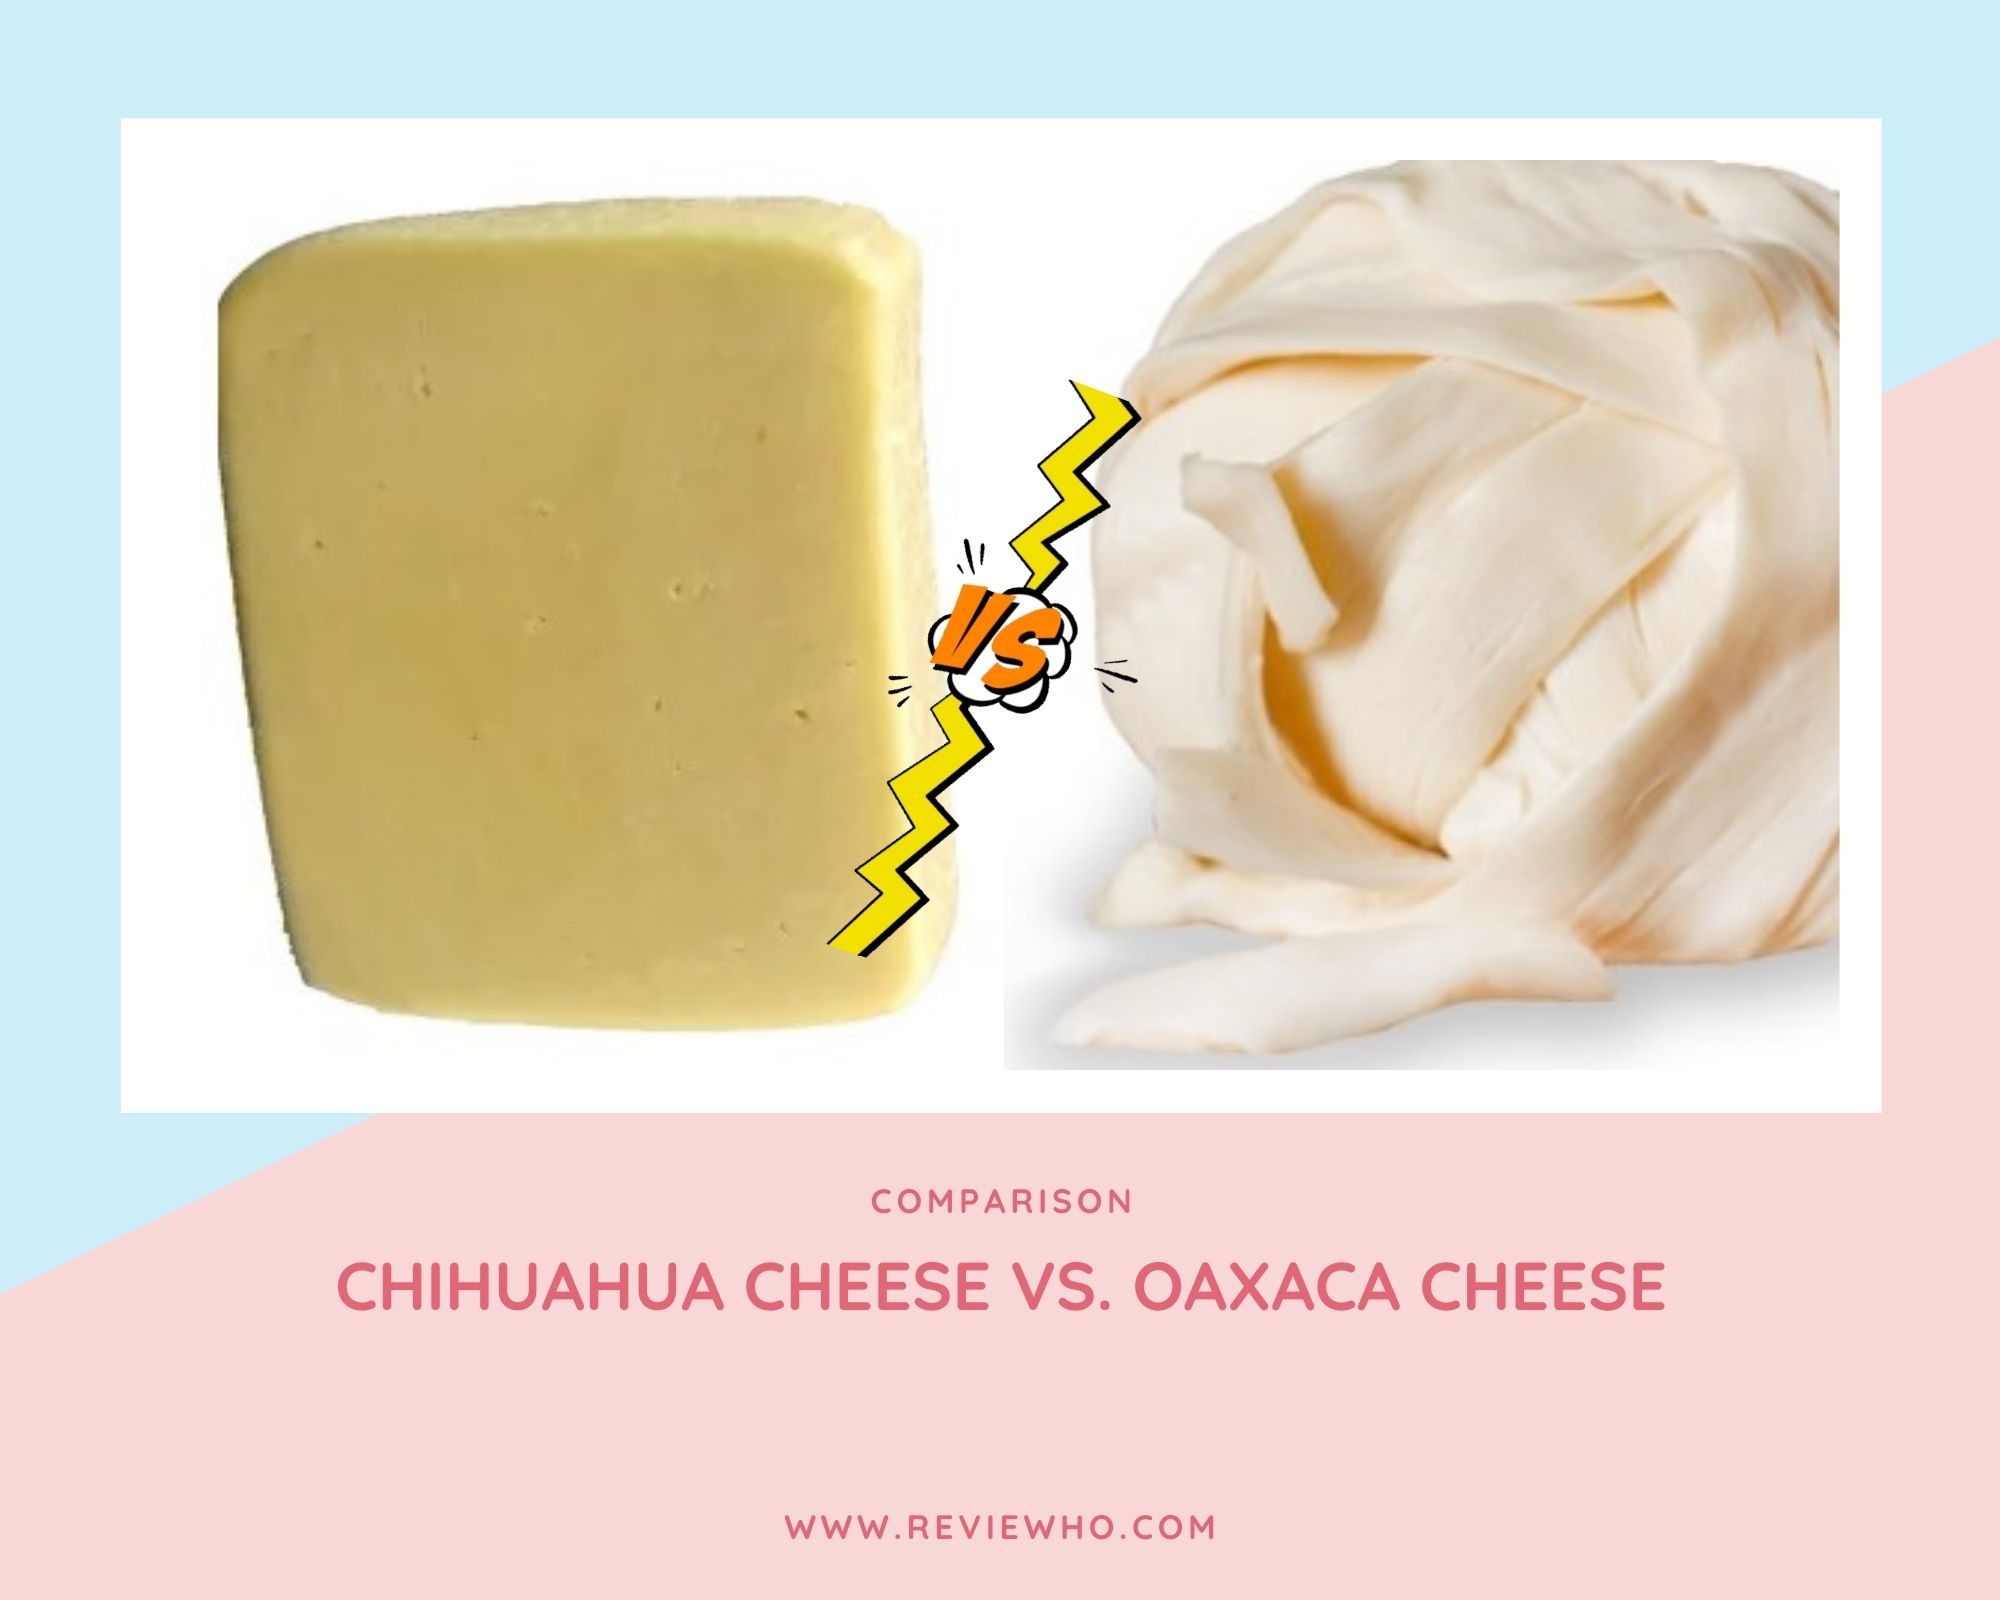 Is Chihuahua cheese like Oaxaca cheese